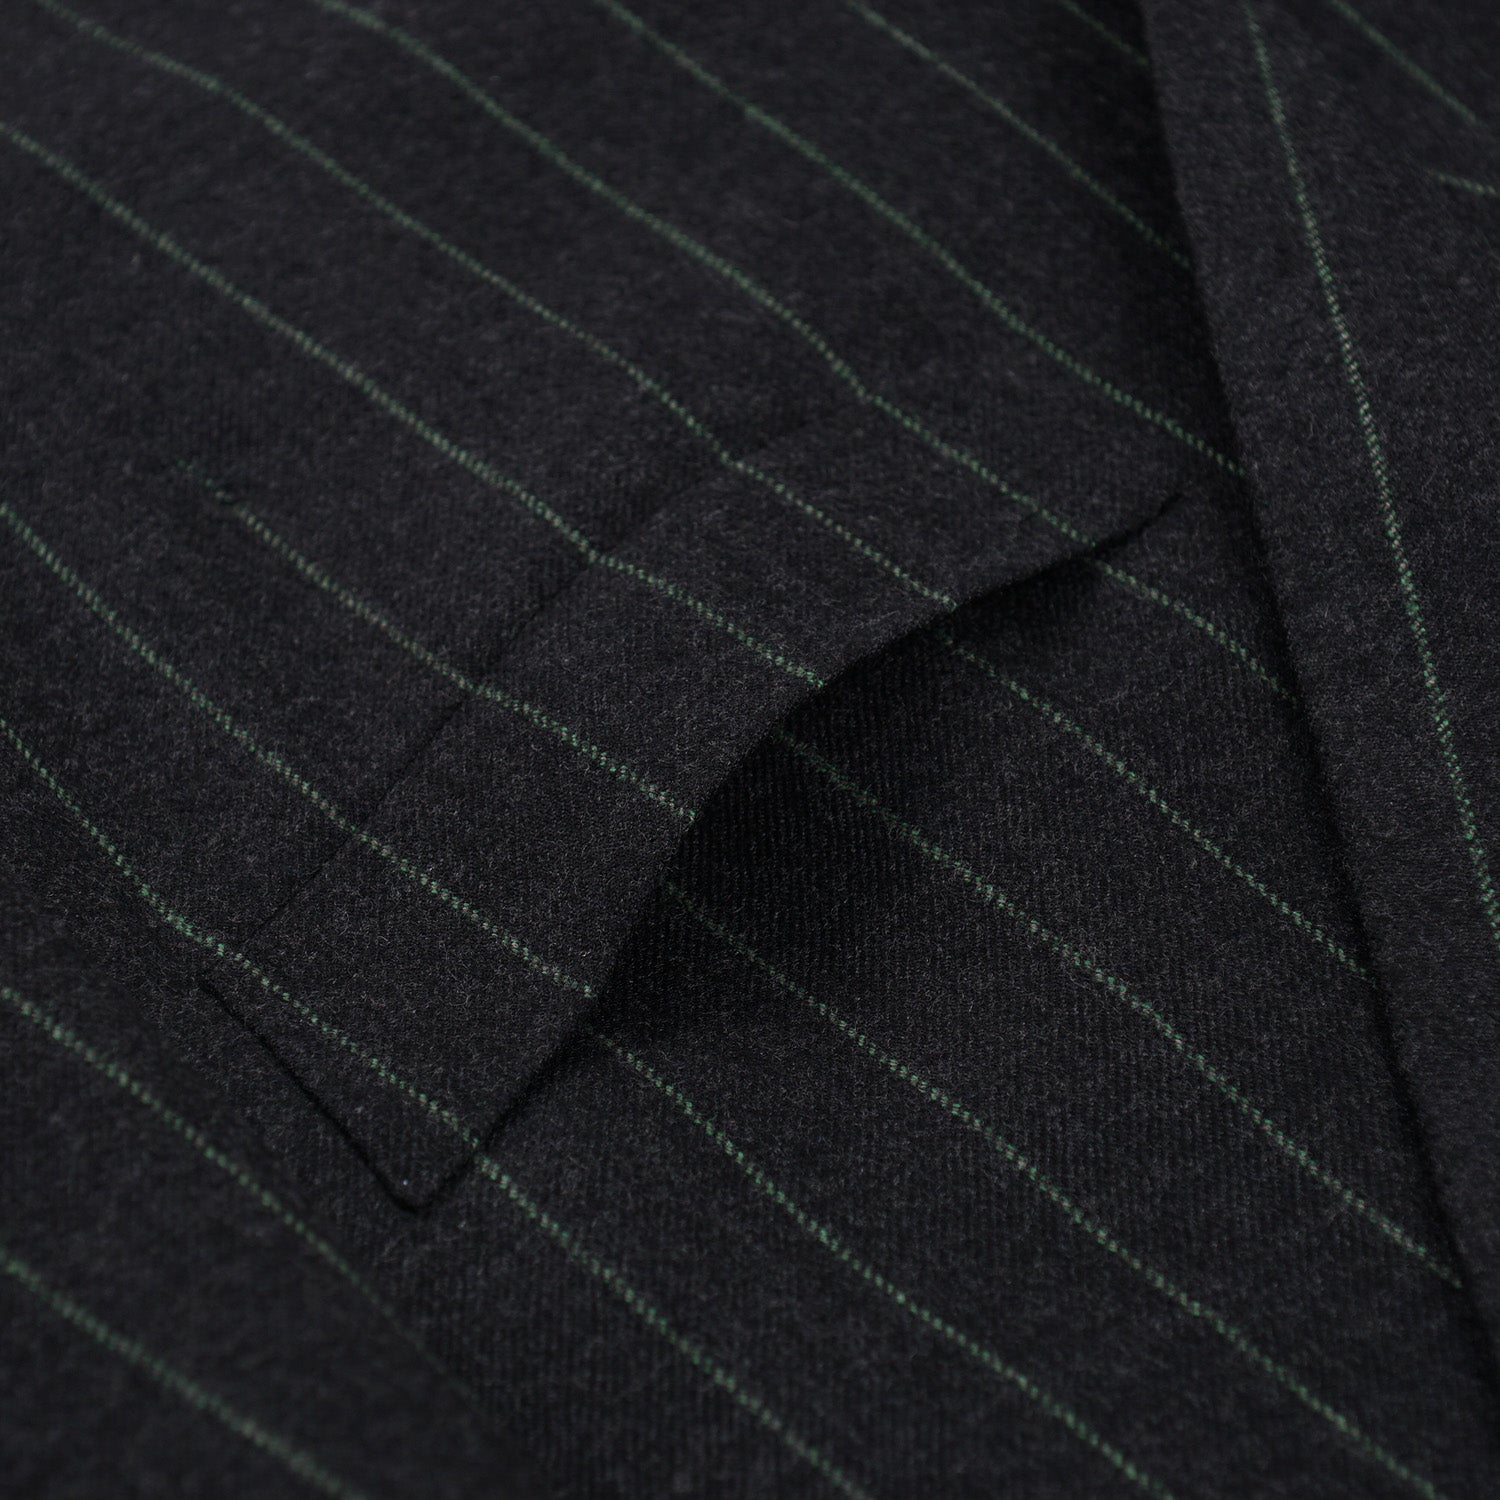 Cesare Attolini Slim-Fit Flannel Wool Suit - Top Shelf Apparel